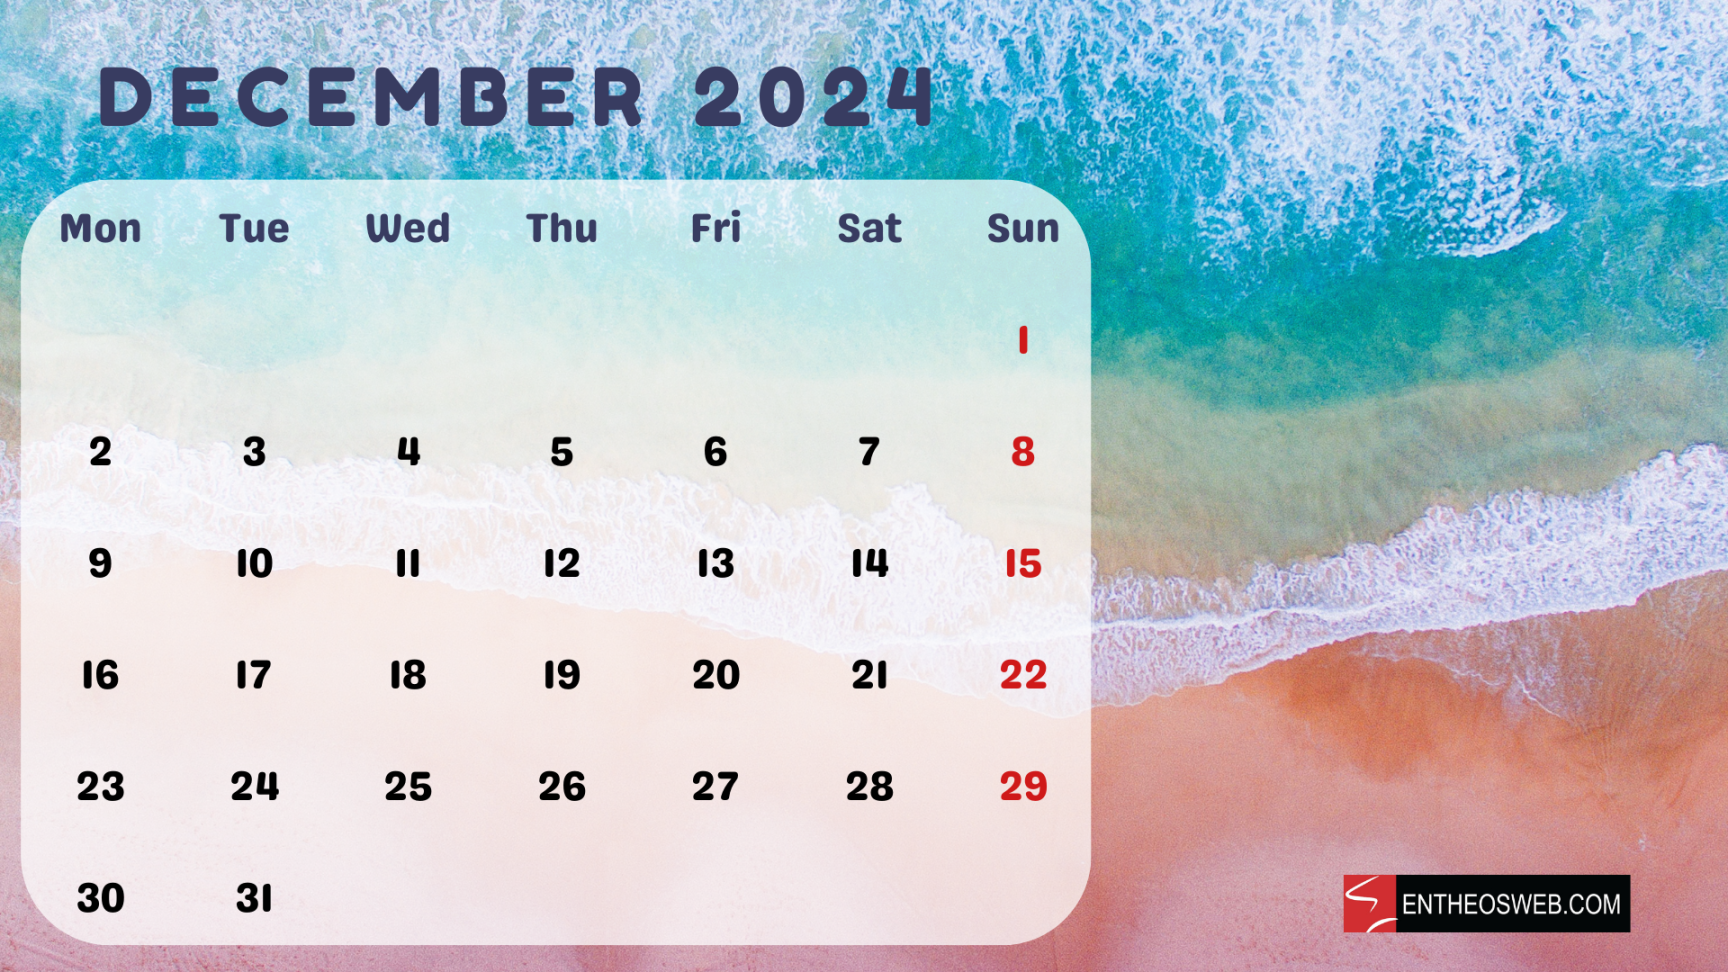 Beaches  Calendar – Printable & Desktop Wallpaper  EntheosWeb